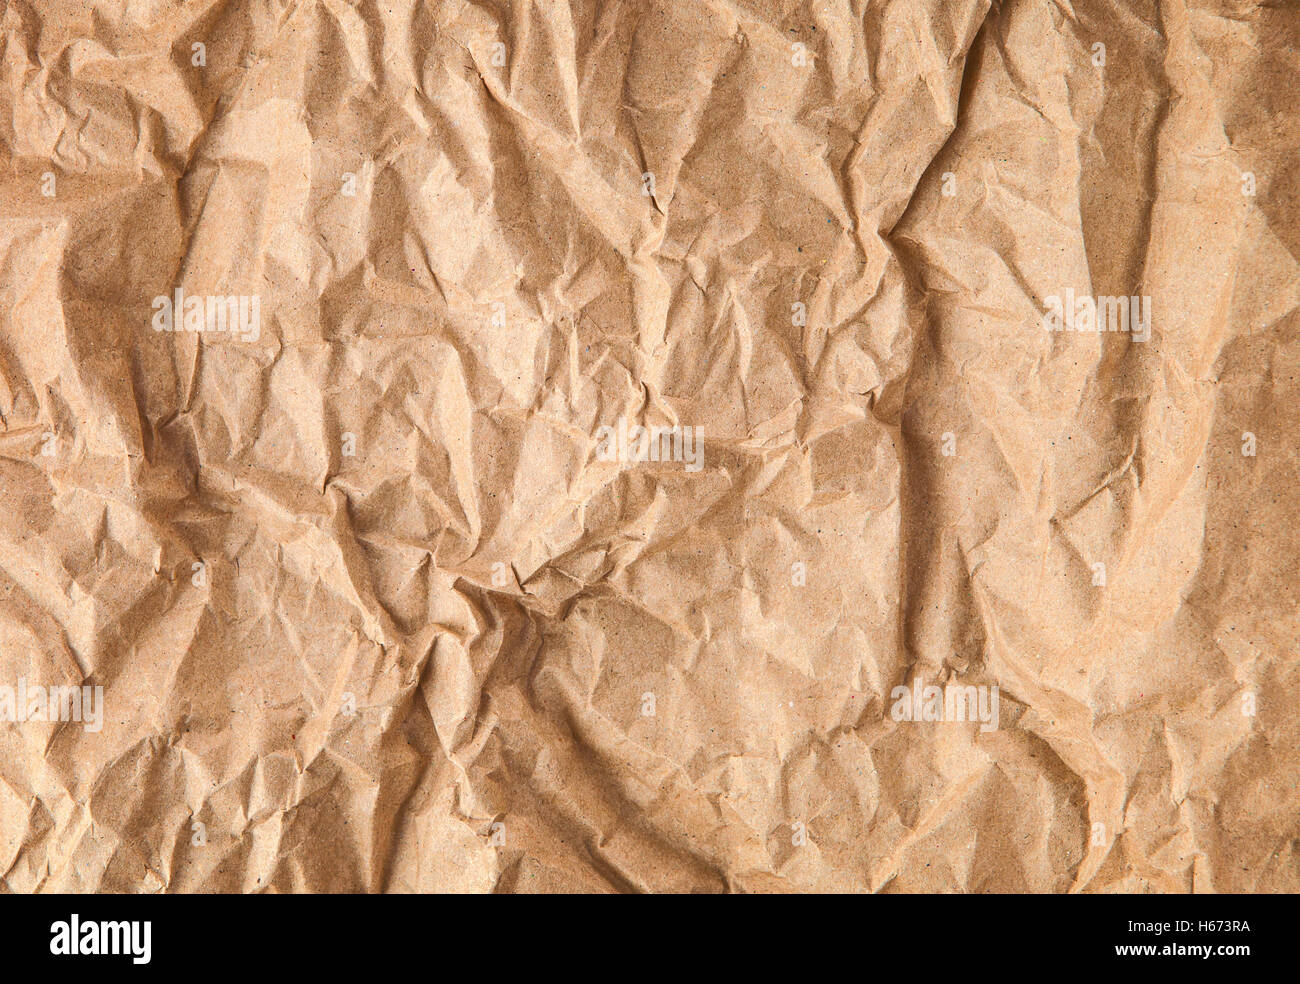 Cream, handmade paper texture Stock Photo by ©chrupka 40991555